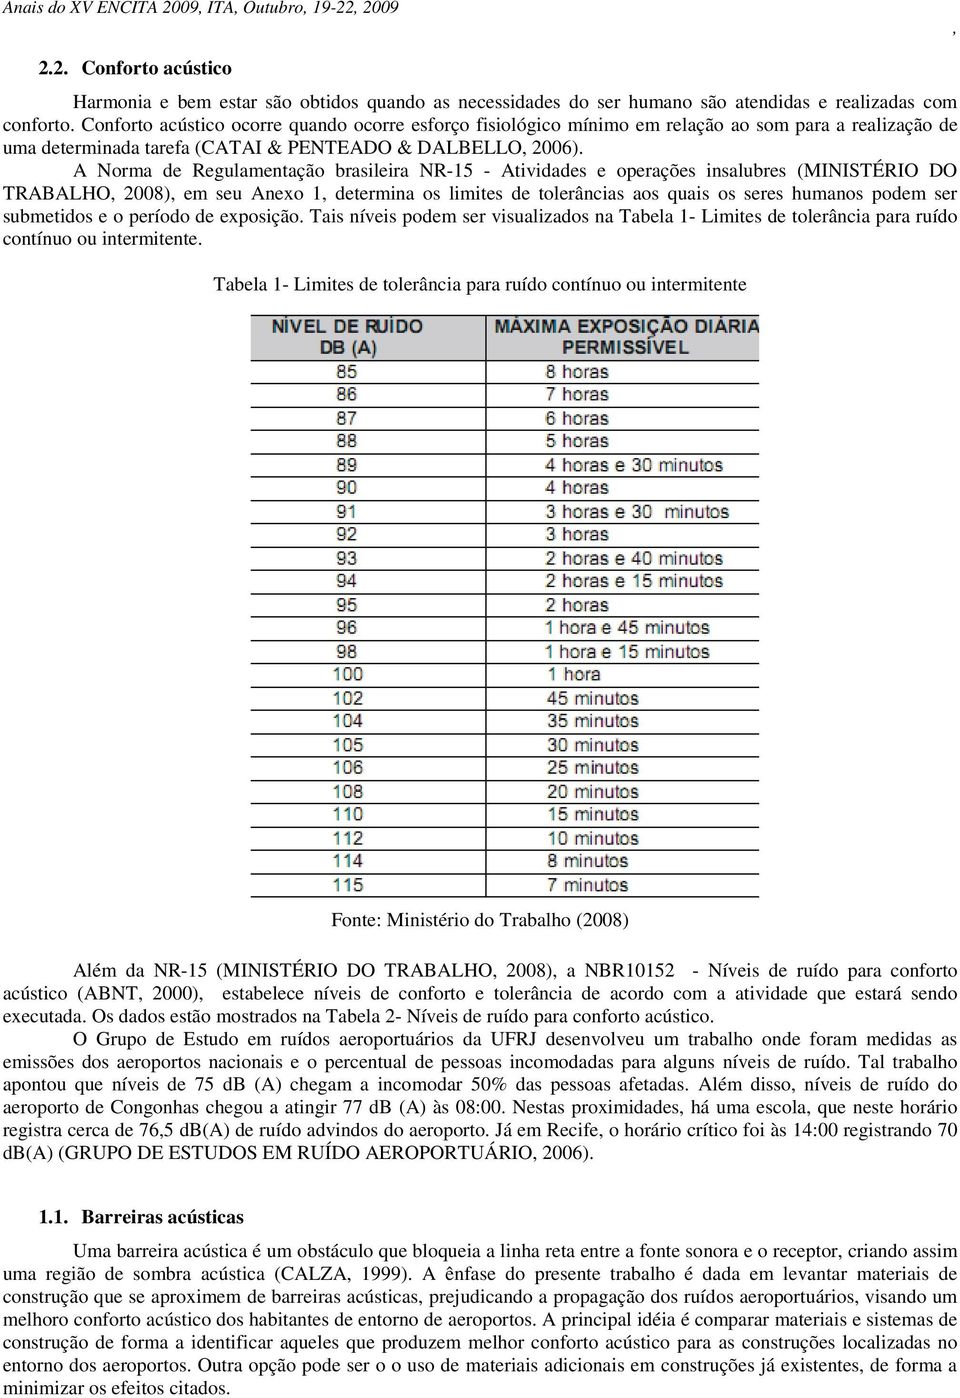 A Norma de Regulamentação brasileira NR-15 - Atividades e operações insalubres (MINISTÉRIO DO TRABALHO 2008) em seu Anexo 1 determina os limites de tolerâncias aos quais os seres humanos podem ser